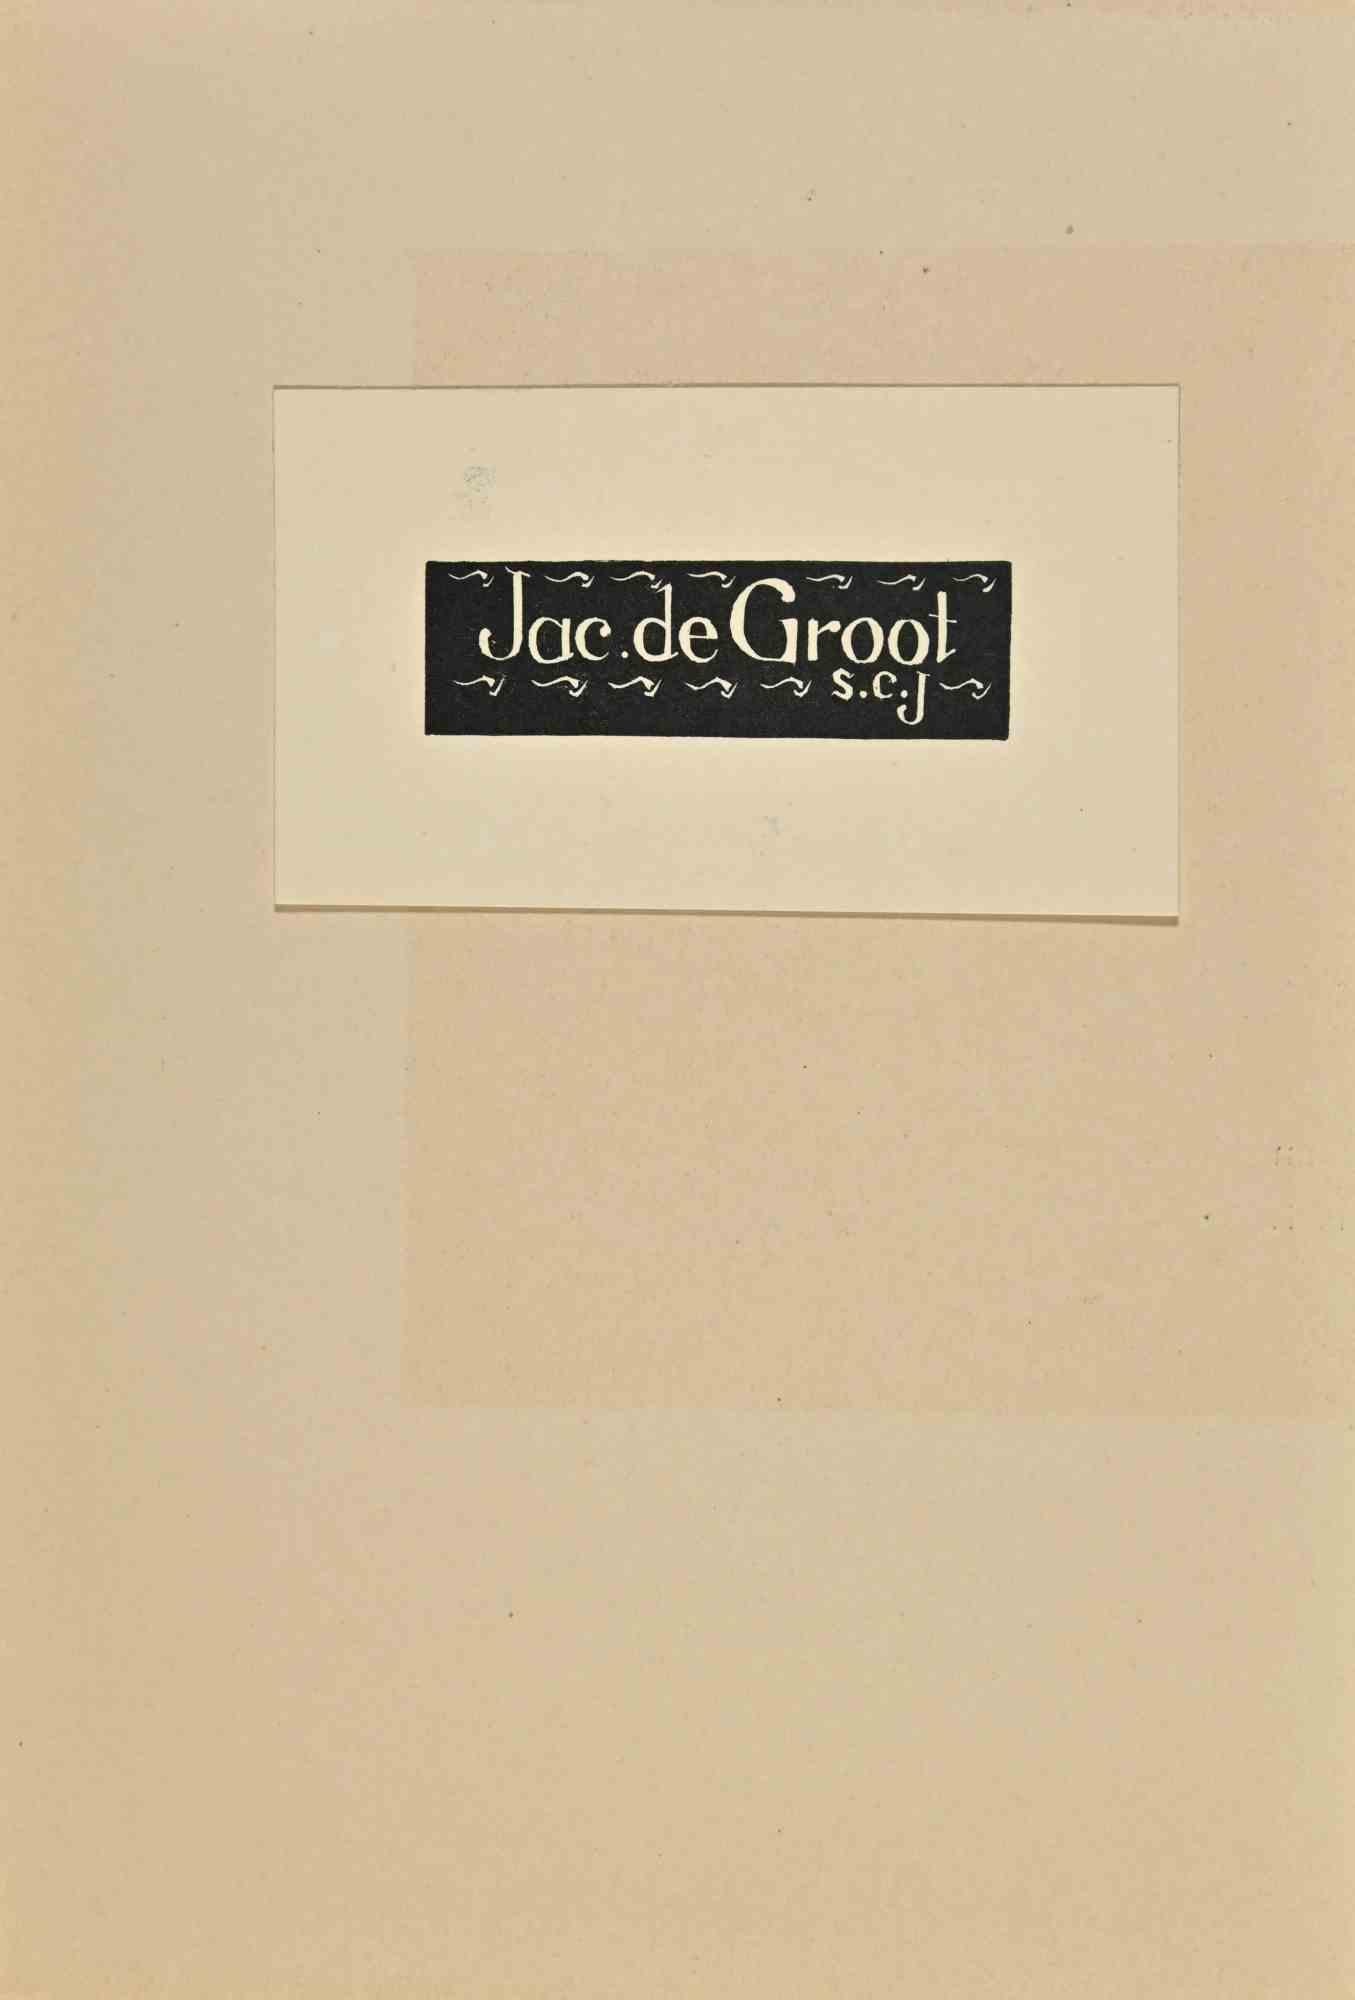 Ex-Libris  - Jac de Groot ist ein Kunstwerk von A. Schellart aus dem Jahr 1935.

Holzschnitt B./W. Druck auf Elfenbeinpapier. Das Werk ist auf elfenbeinfarbenen Karton geklebt. Signiert auf der Platte und datiert auf der Rückseite.

Abmessungen